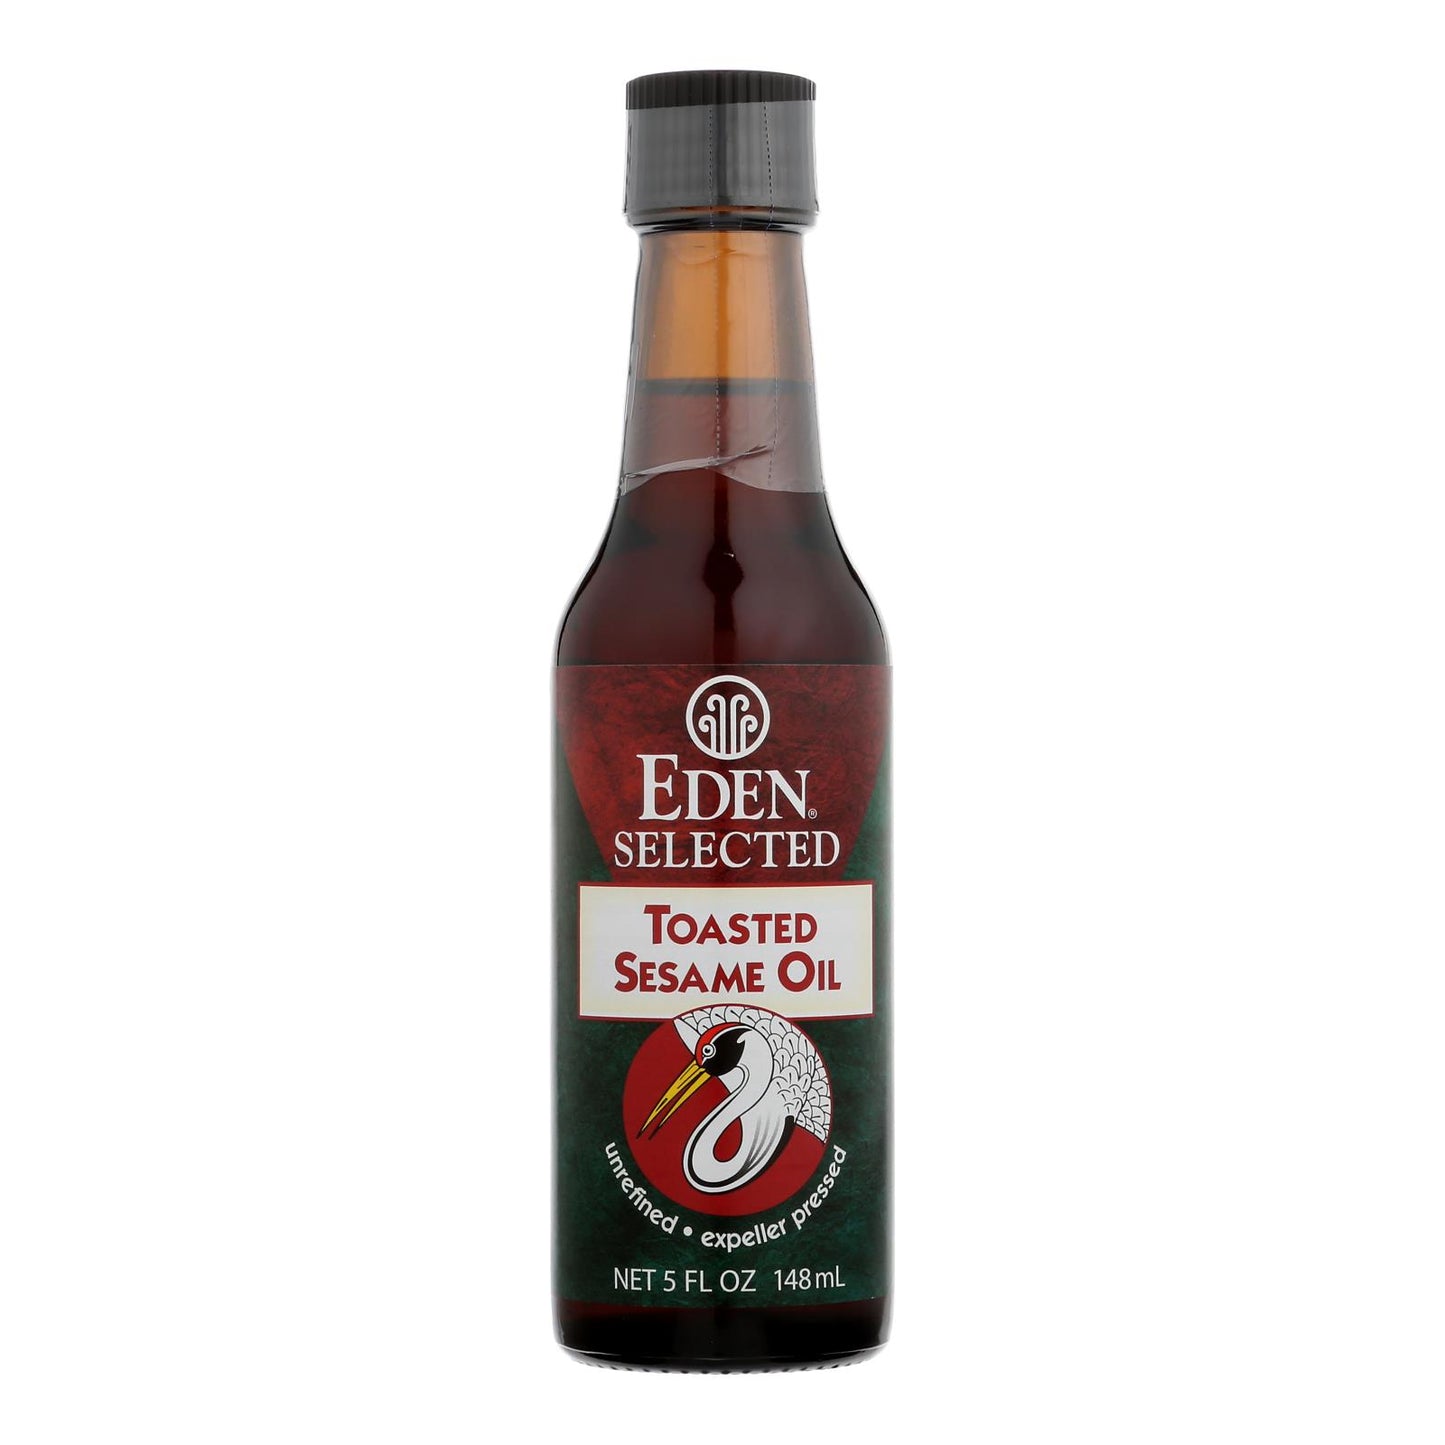 Eden Foods Sesame Oil - Toasted - 5 Oz - Case Of 12